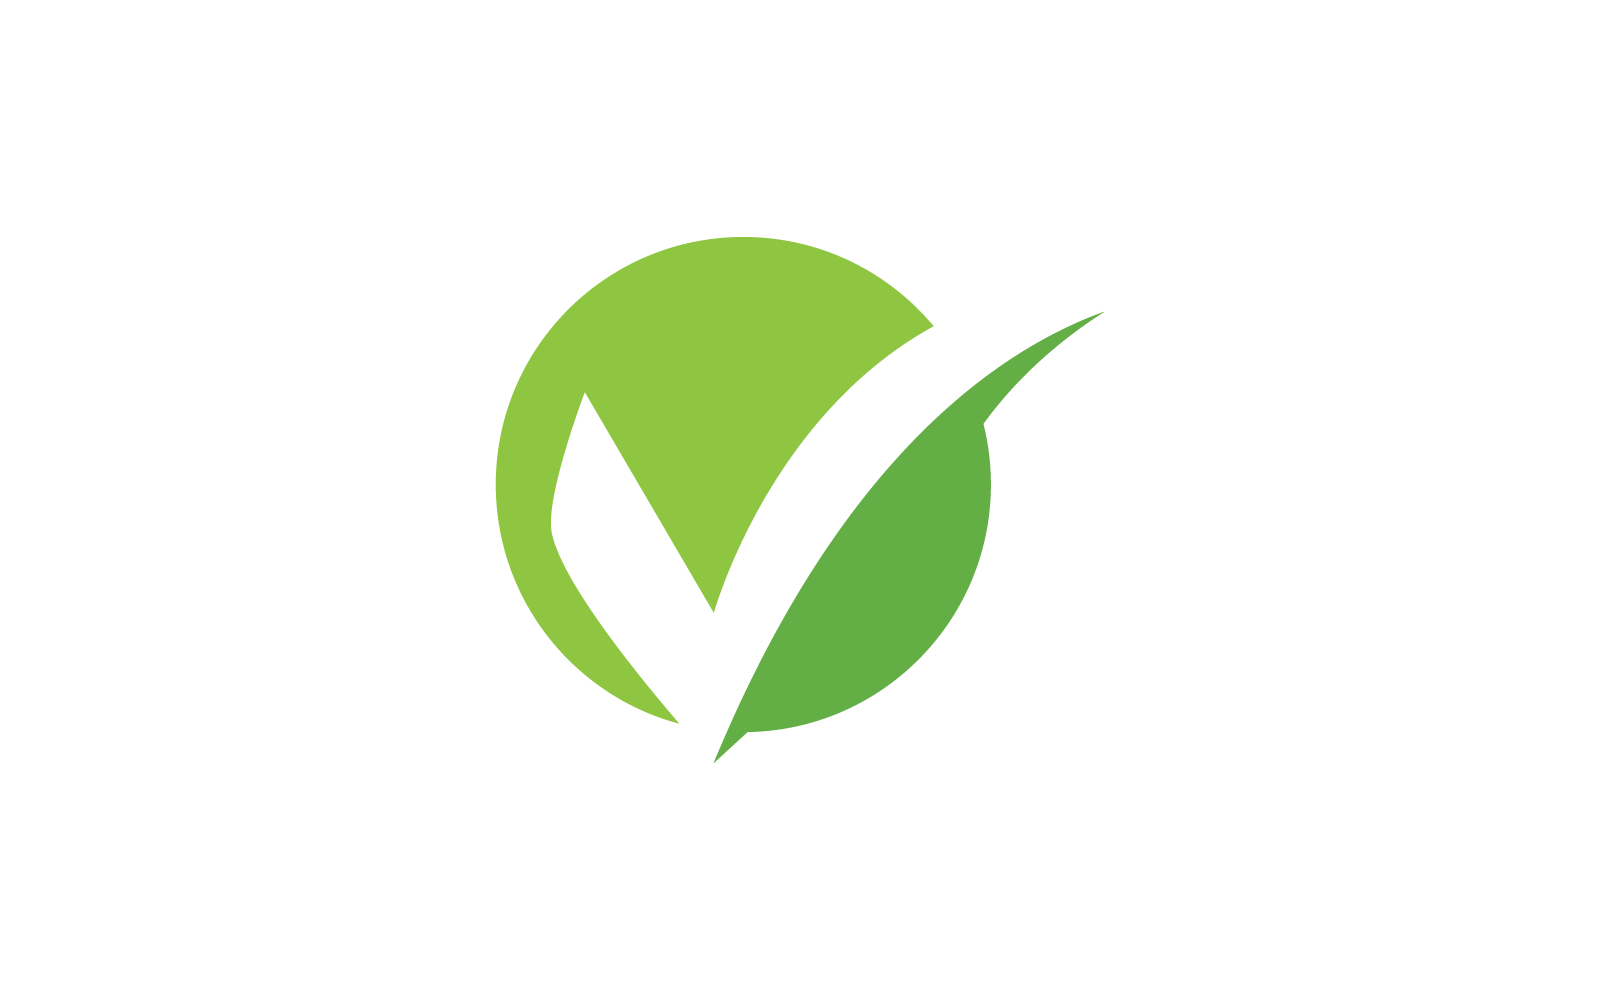 Check mark V letter logo design illustration Logo Template